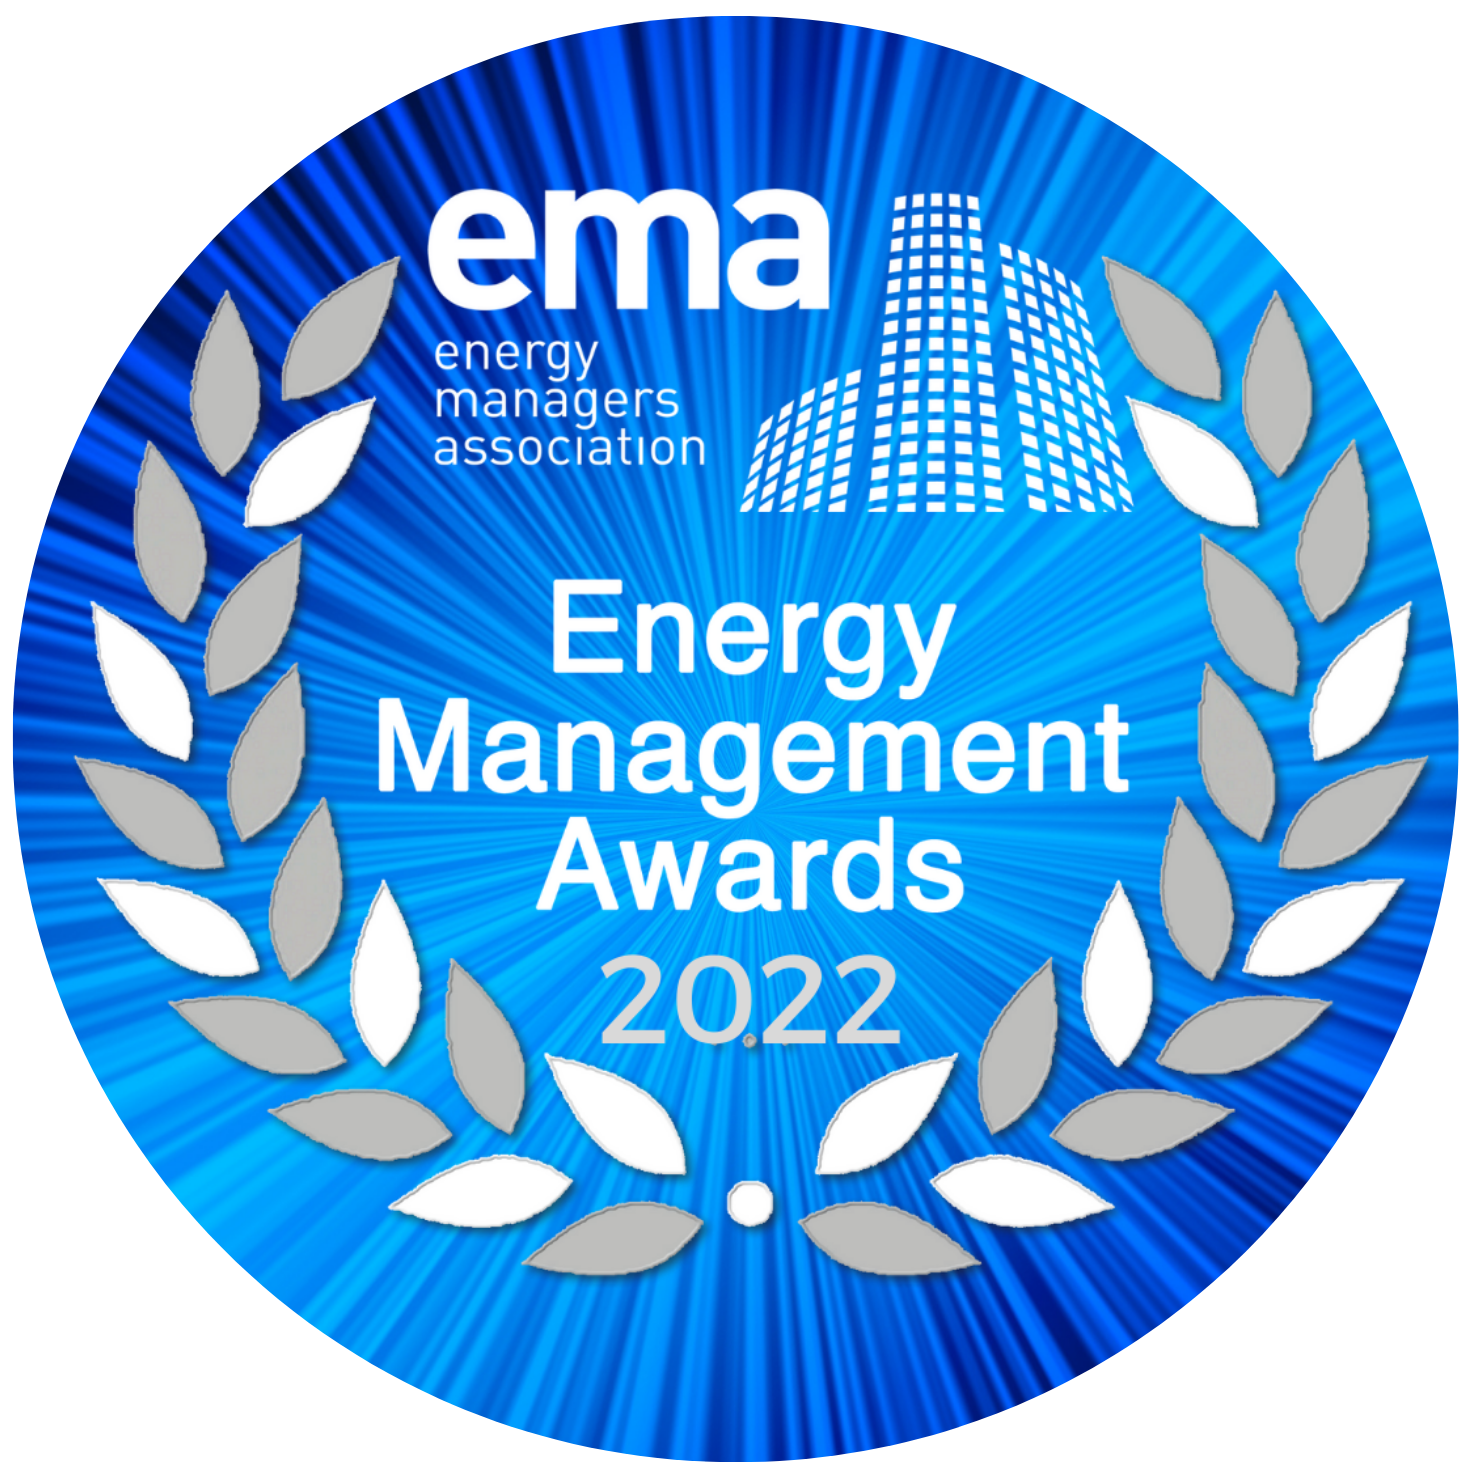 Energy Management Awards 2022